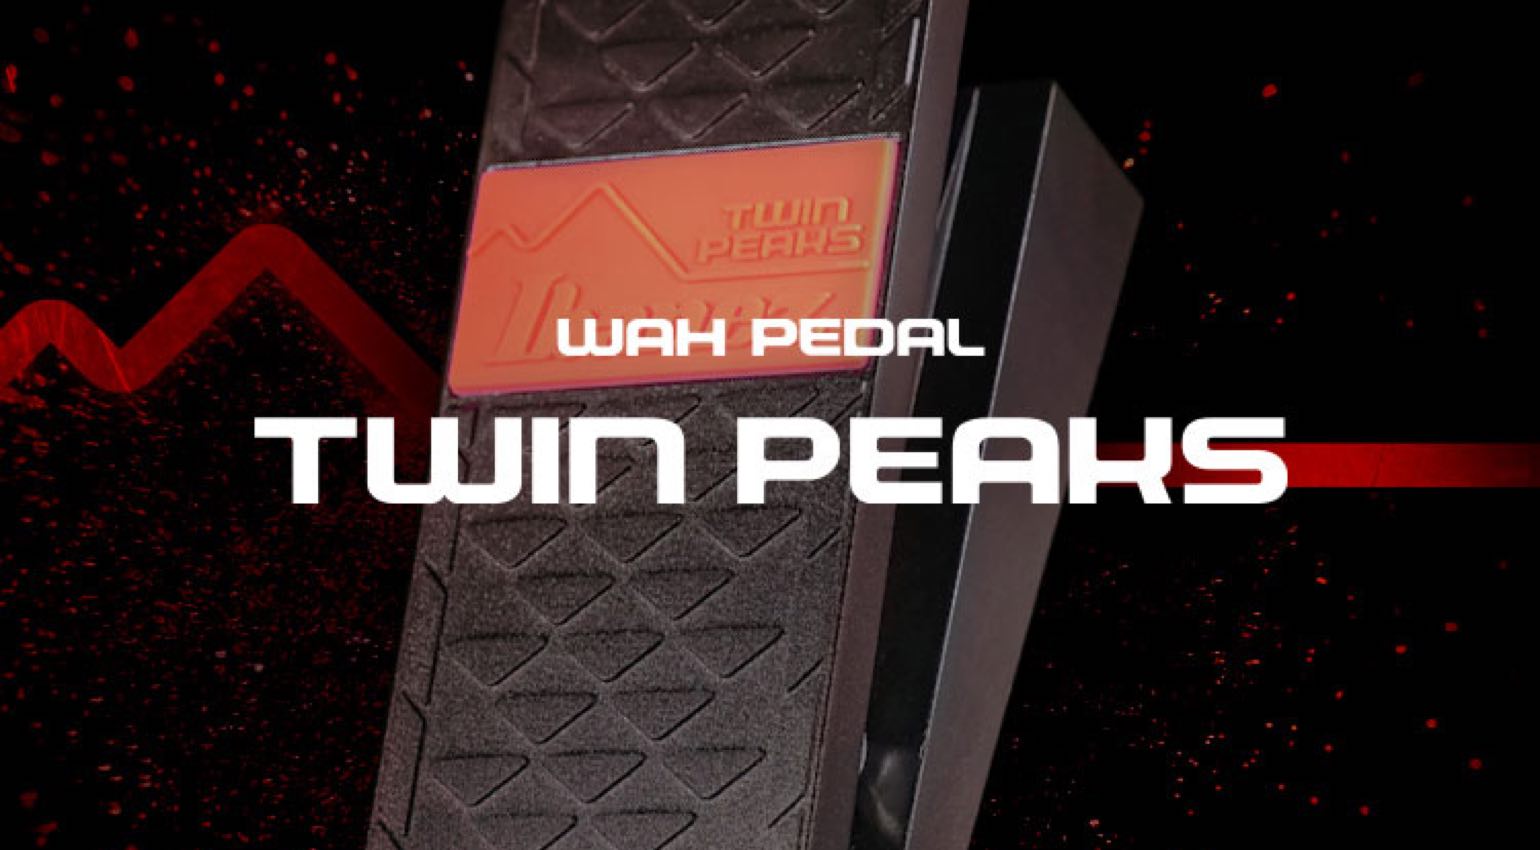 Ibanez TW10 Twin Peaks Wah-Pedal